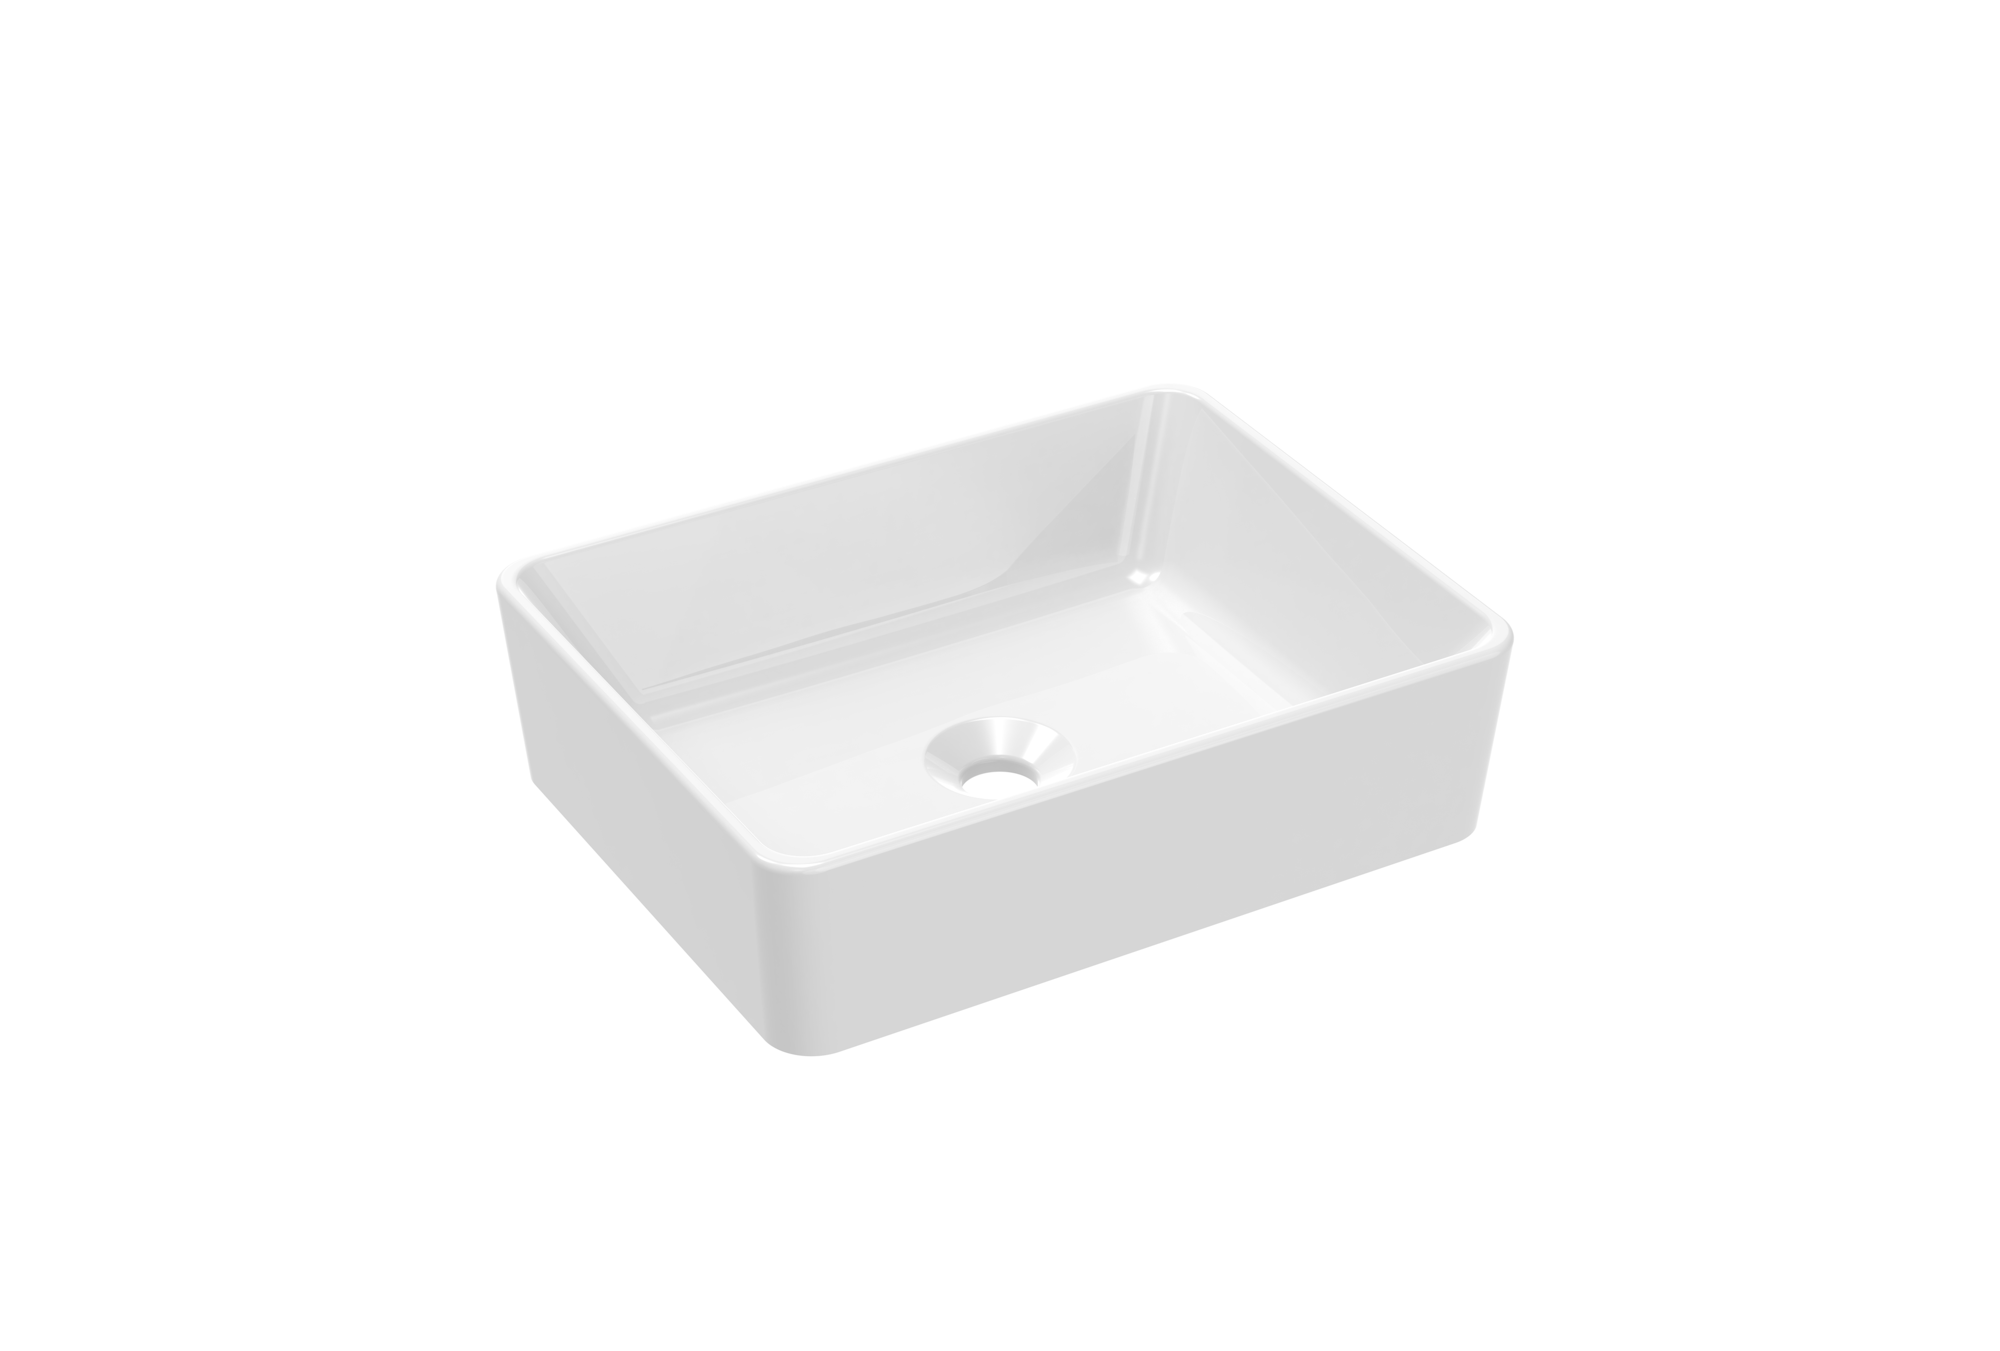 MATTEO 48x37cm countertop washbasin